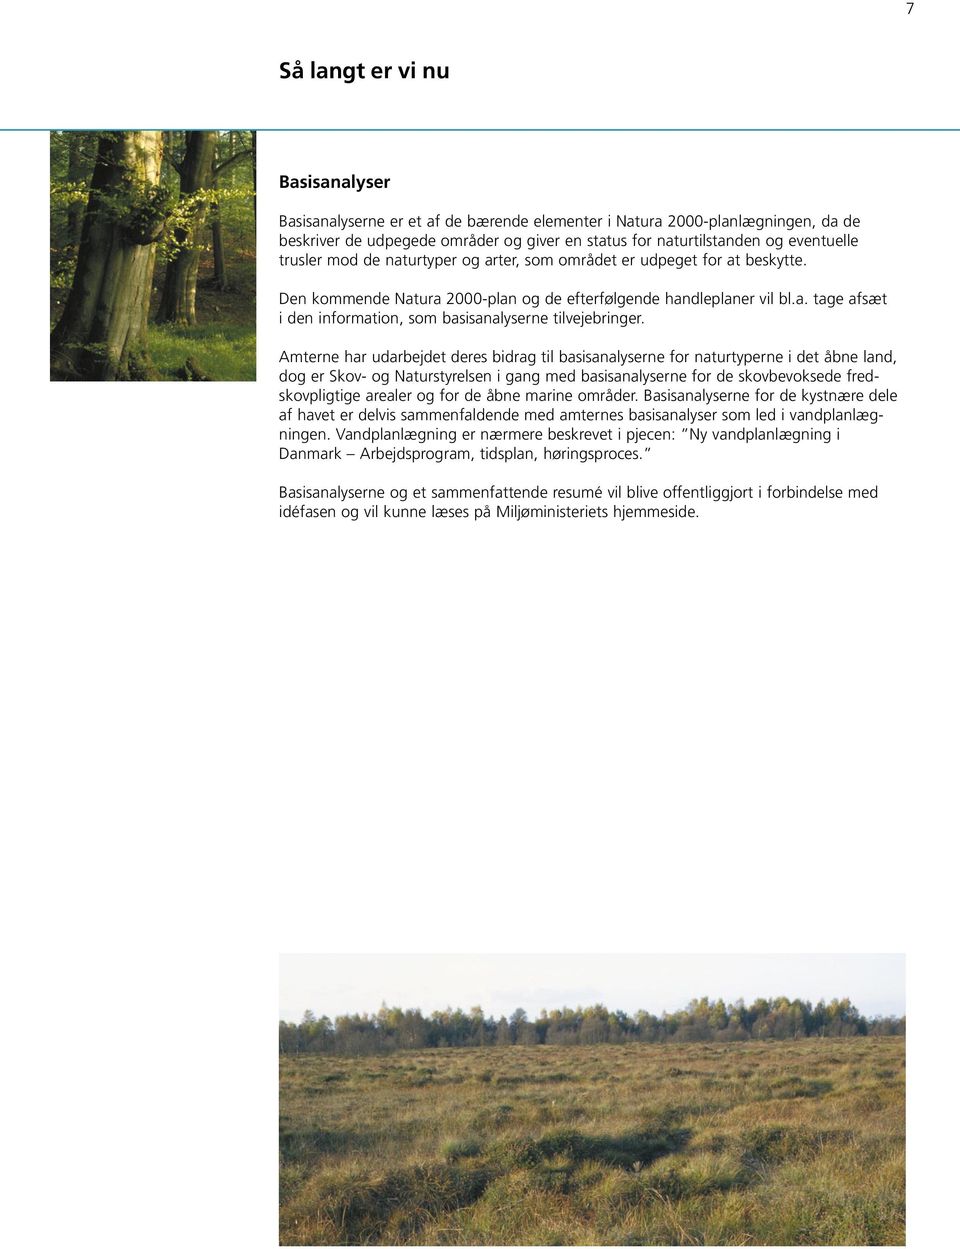 Amterne har udarbejdet deres bidrag til basisanalyserne for naturtyperne i det åbne land, dog er Skov- og Naturstyrelsen i gang med basisanalyserne for de skovbevoksede fredskovpligtige arealer og